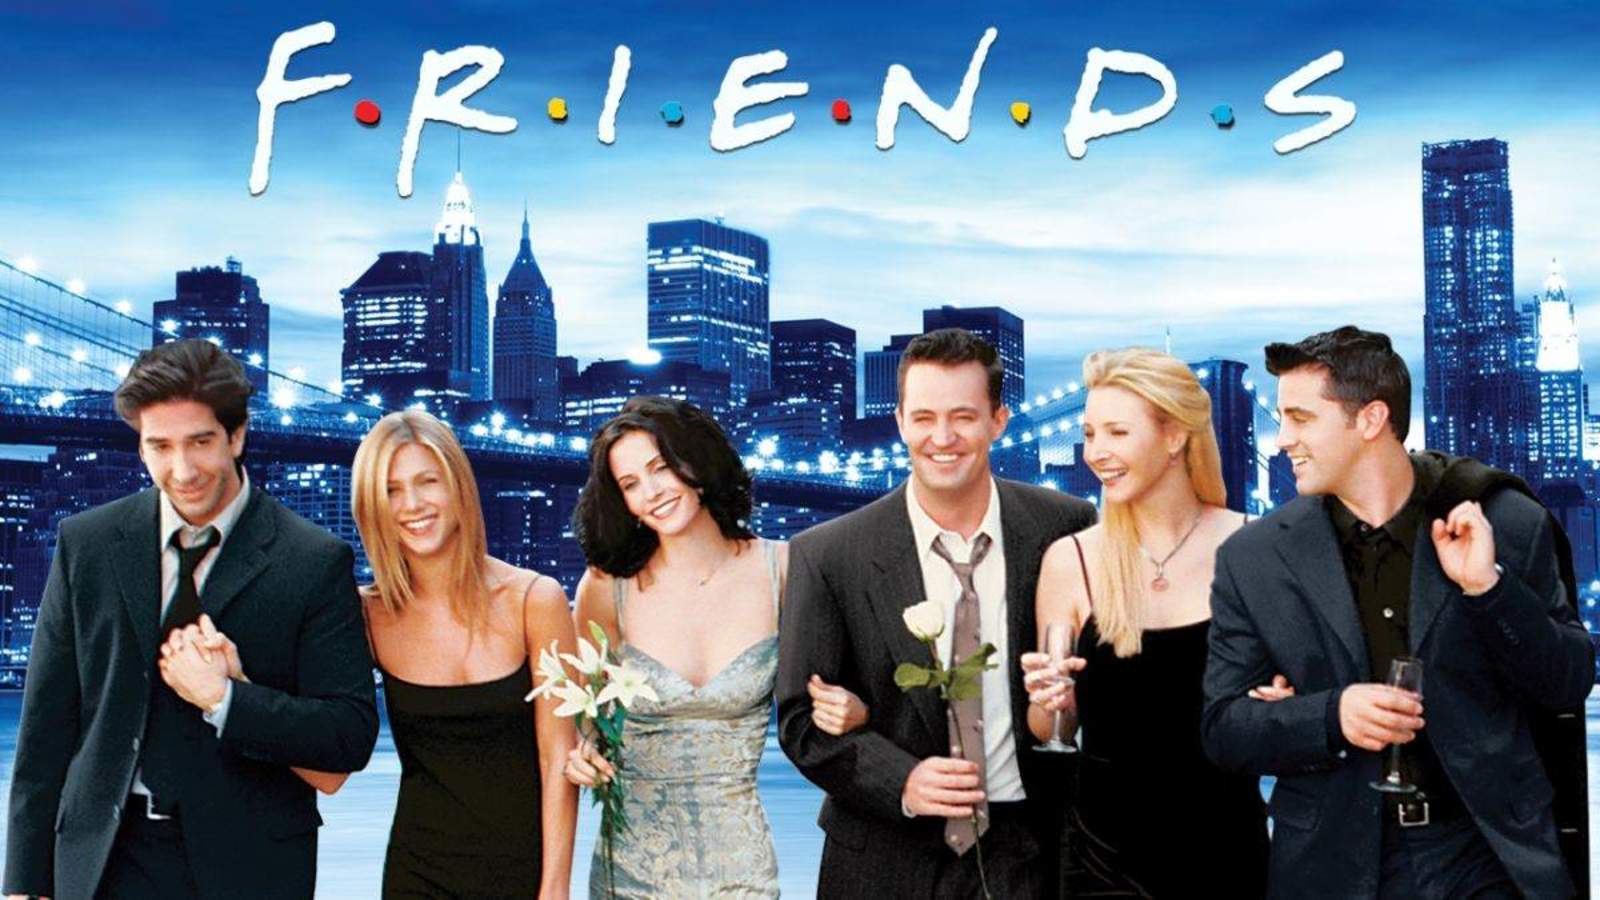  Latinoamérica podrán seguir disfrutando de la comedia romántica de “Rachel” “Joey” “Phoebe” “Mónica” “Chandler” y “Ross”.  (ESPECIAL)